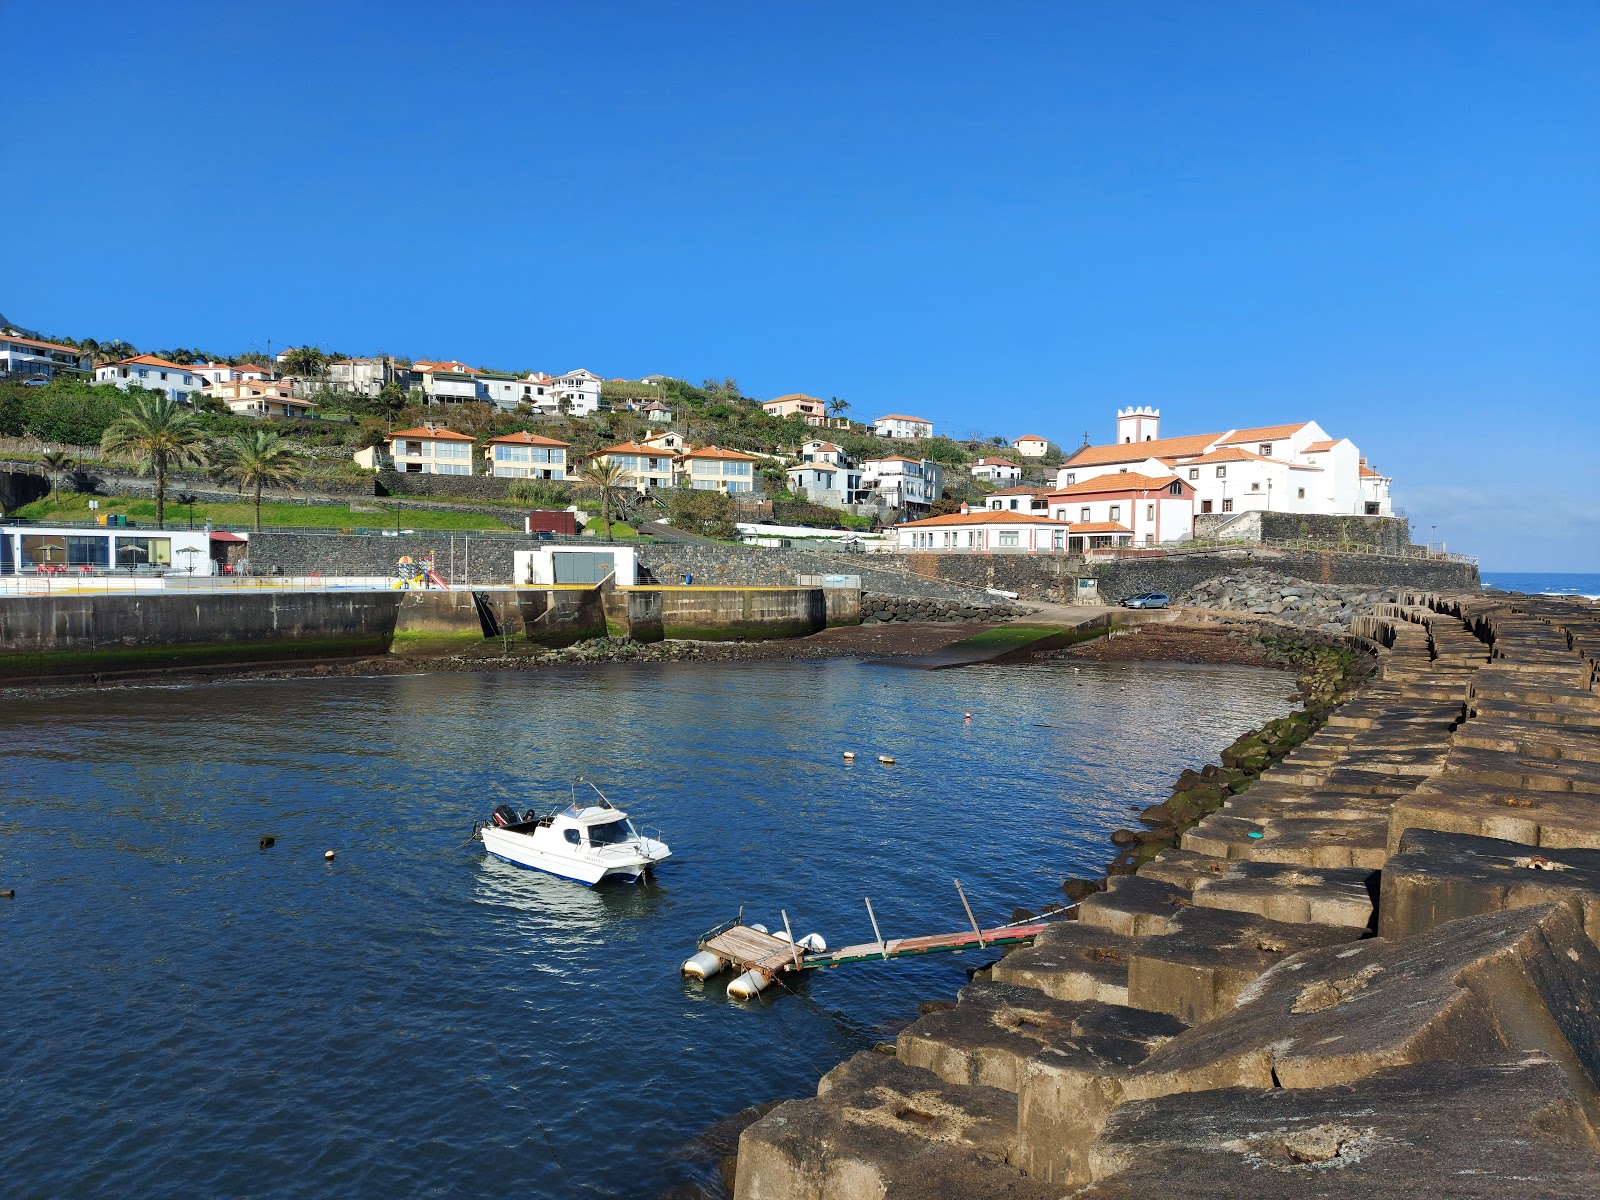 Photo of Piscinas de Ponta Delgada and the settlement